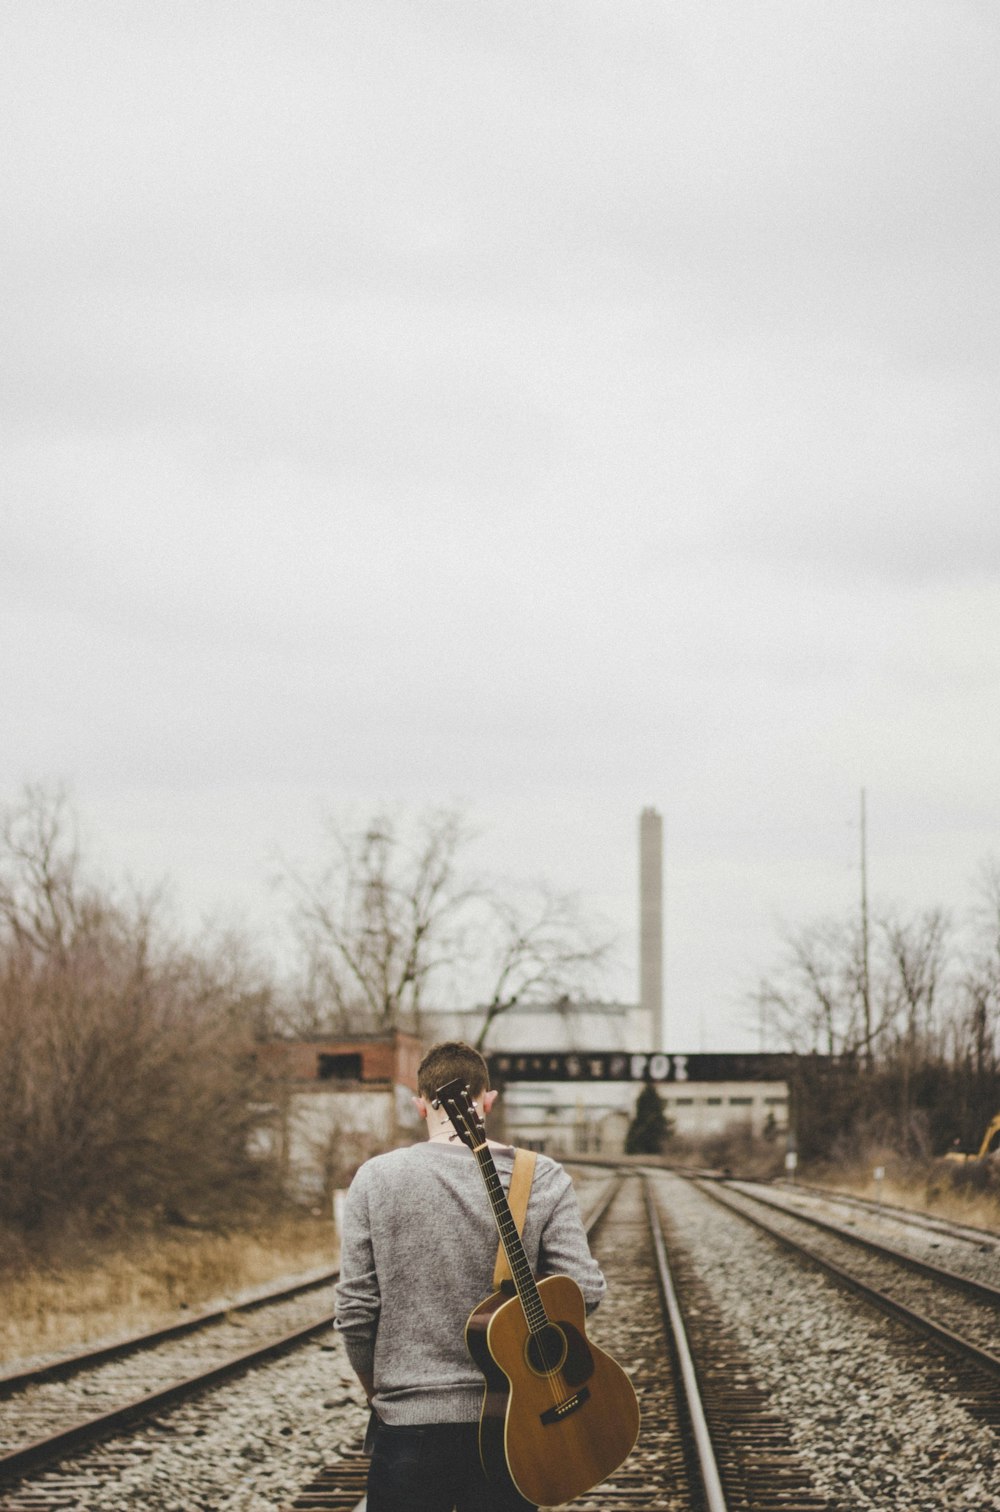 電車のレールの上を歩くギターを持った男